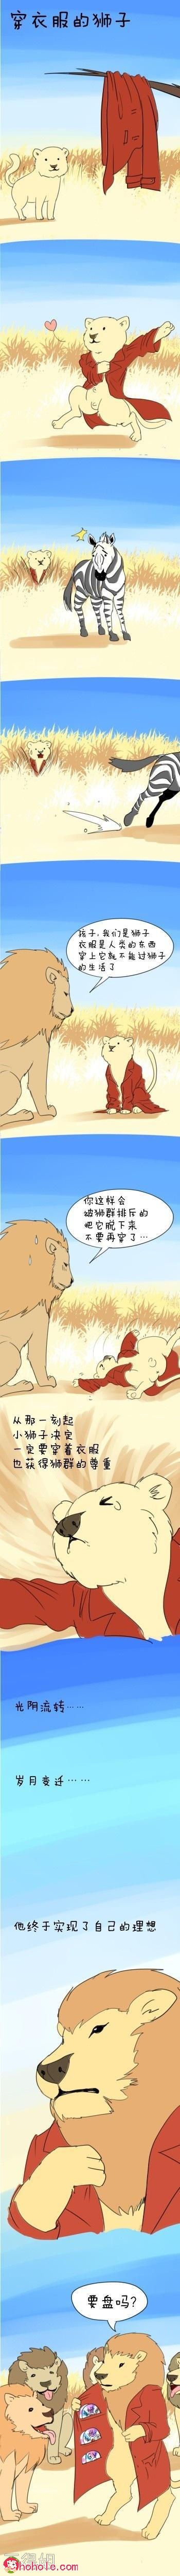 穿红衣服的狮子如何得到大家的尊重